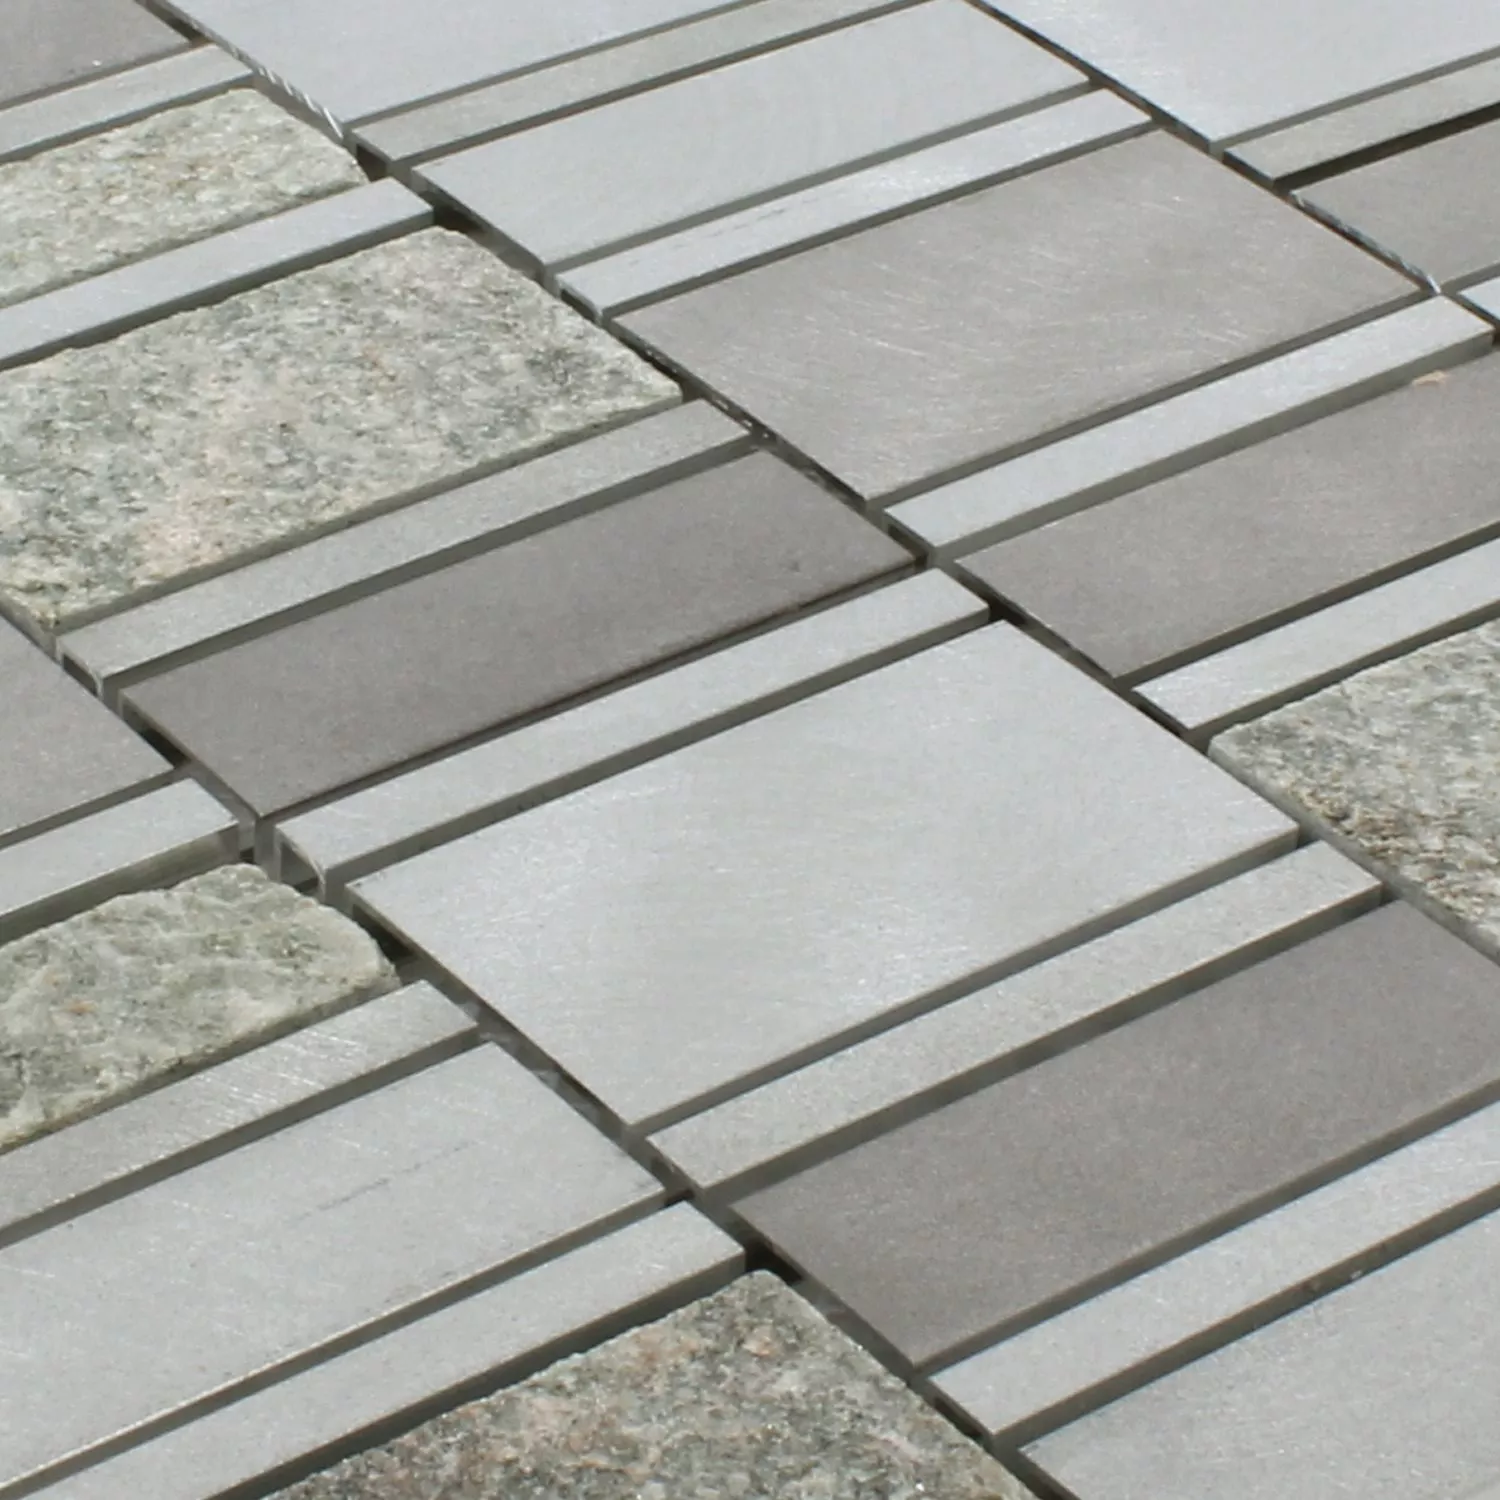 Sample Mosaic Tiles Natural Stone Aluminium Avanti Grey